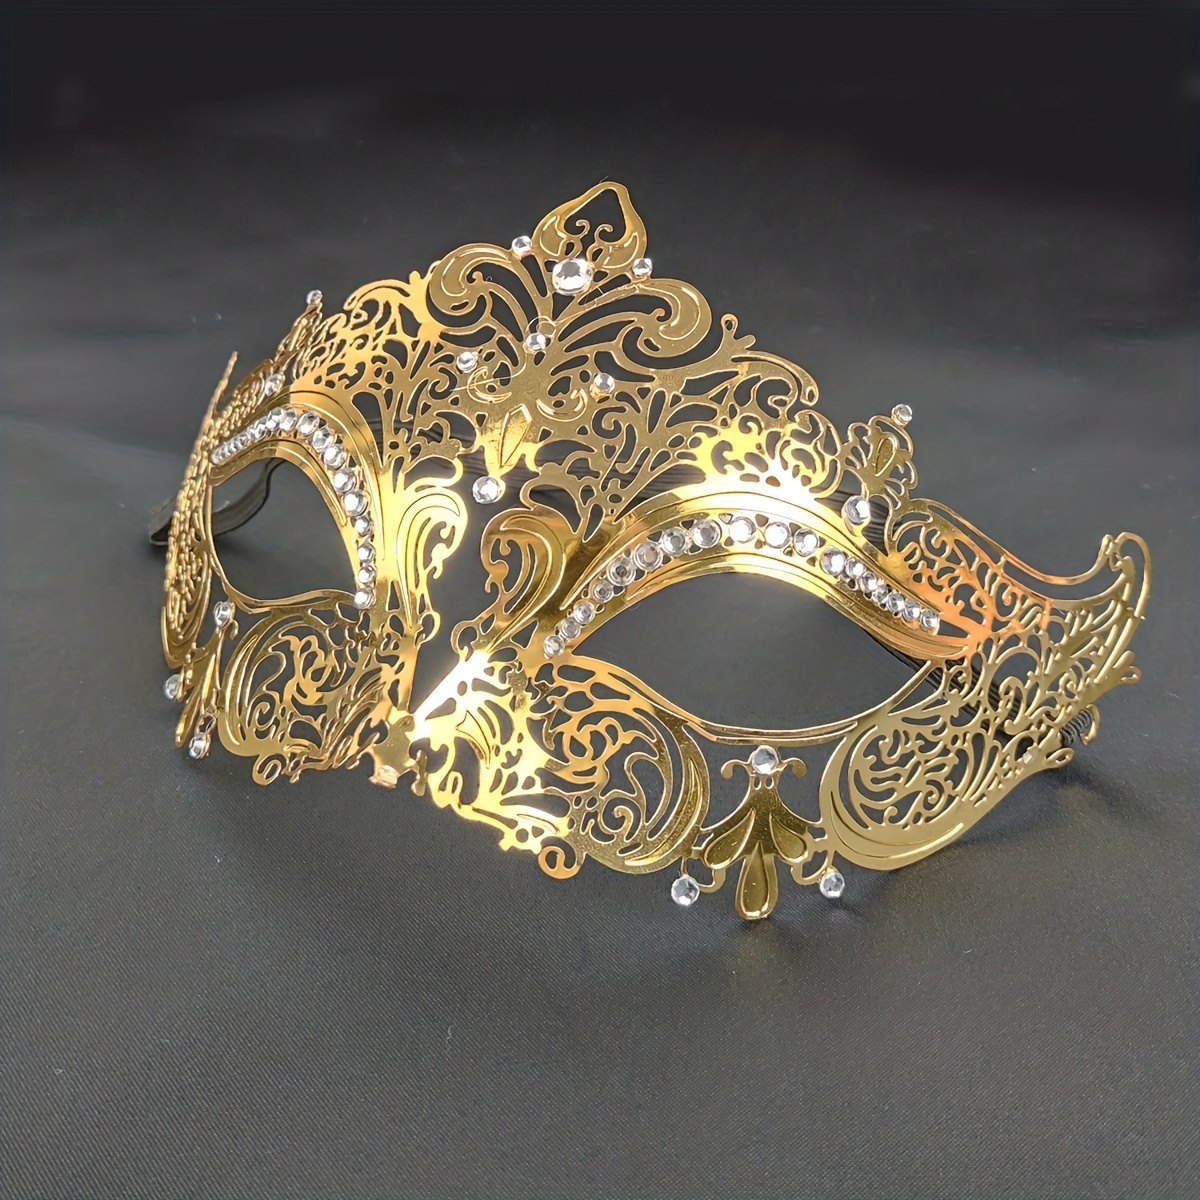 Maschera nera e oro con paillettes per 4,95 €